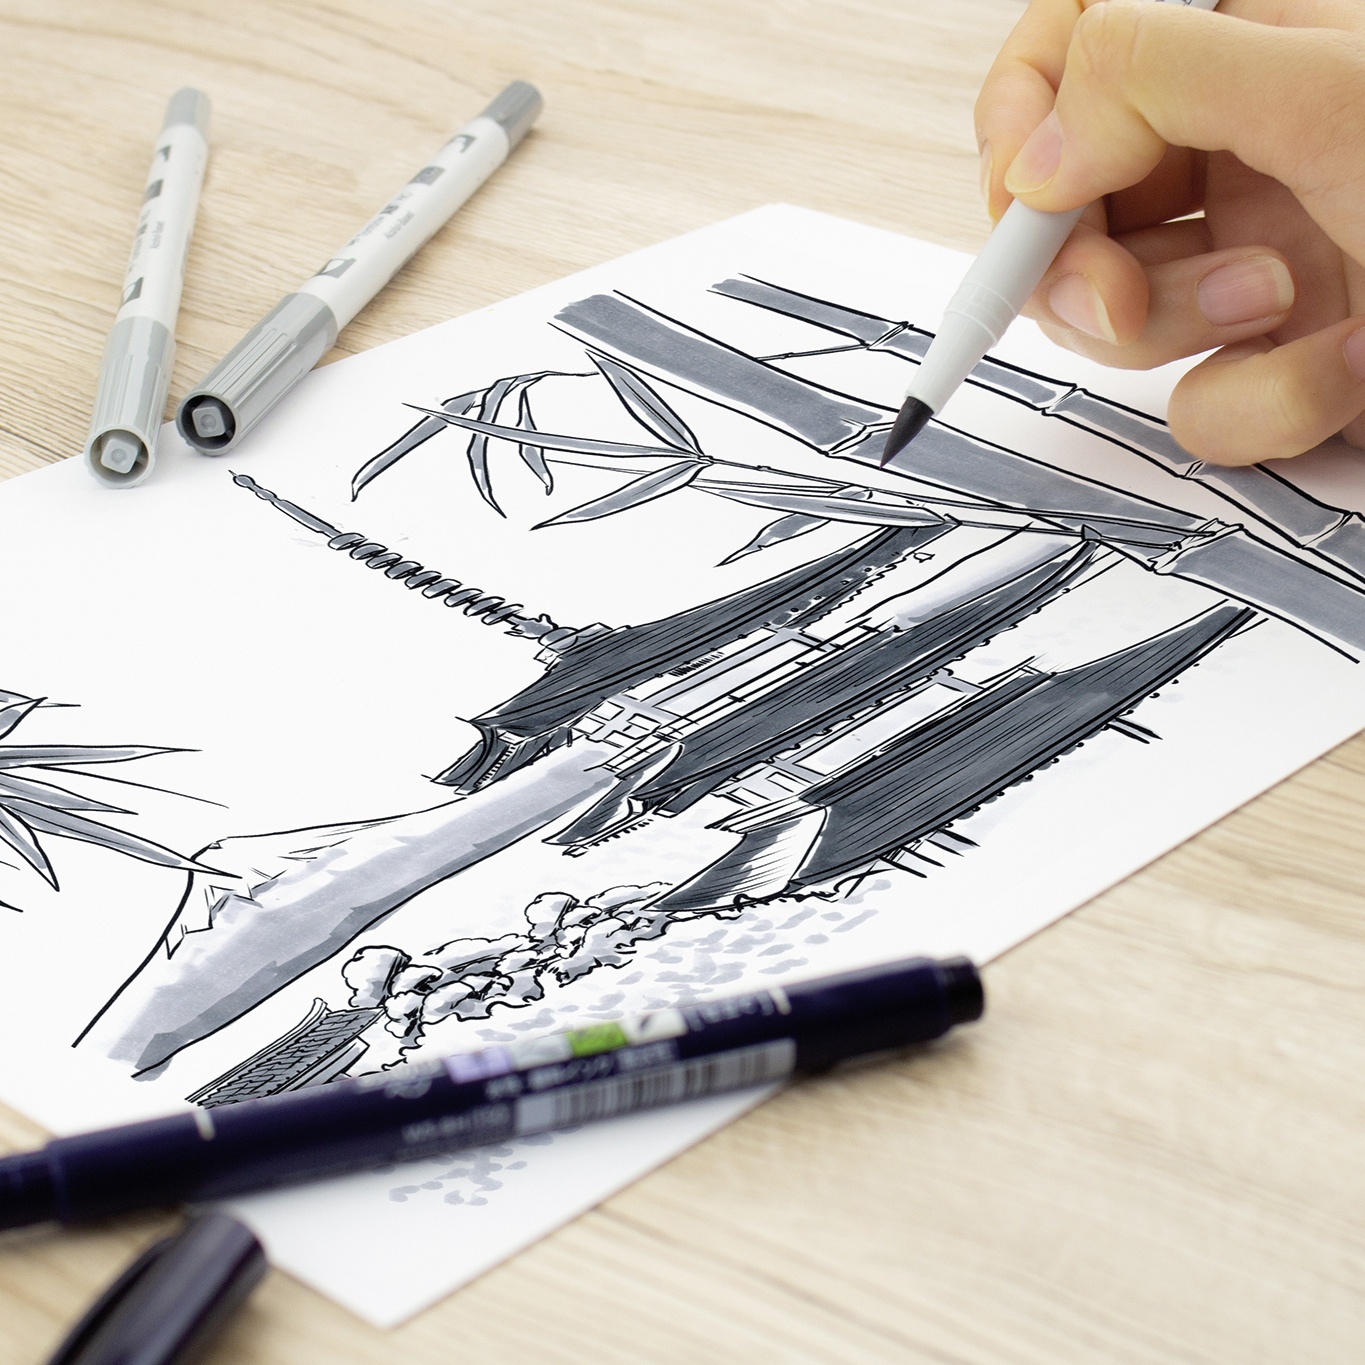 ABT PRO Dual Brush Pen ensemble de 12 Basic dans le groupe Stylos / Crayons d'artistes / Feutres pinceaux chez Pen Store (101254)